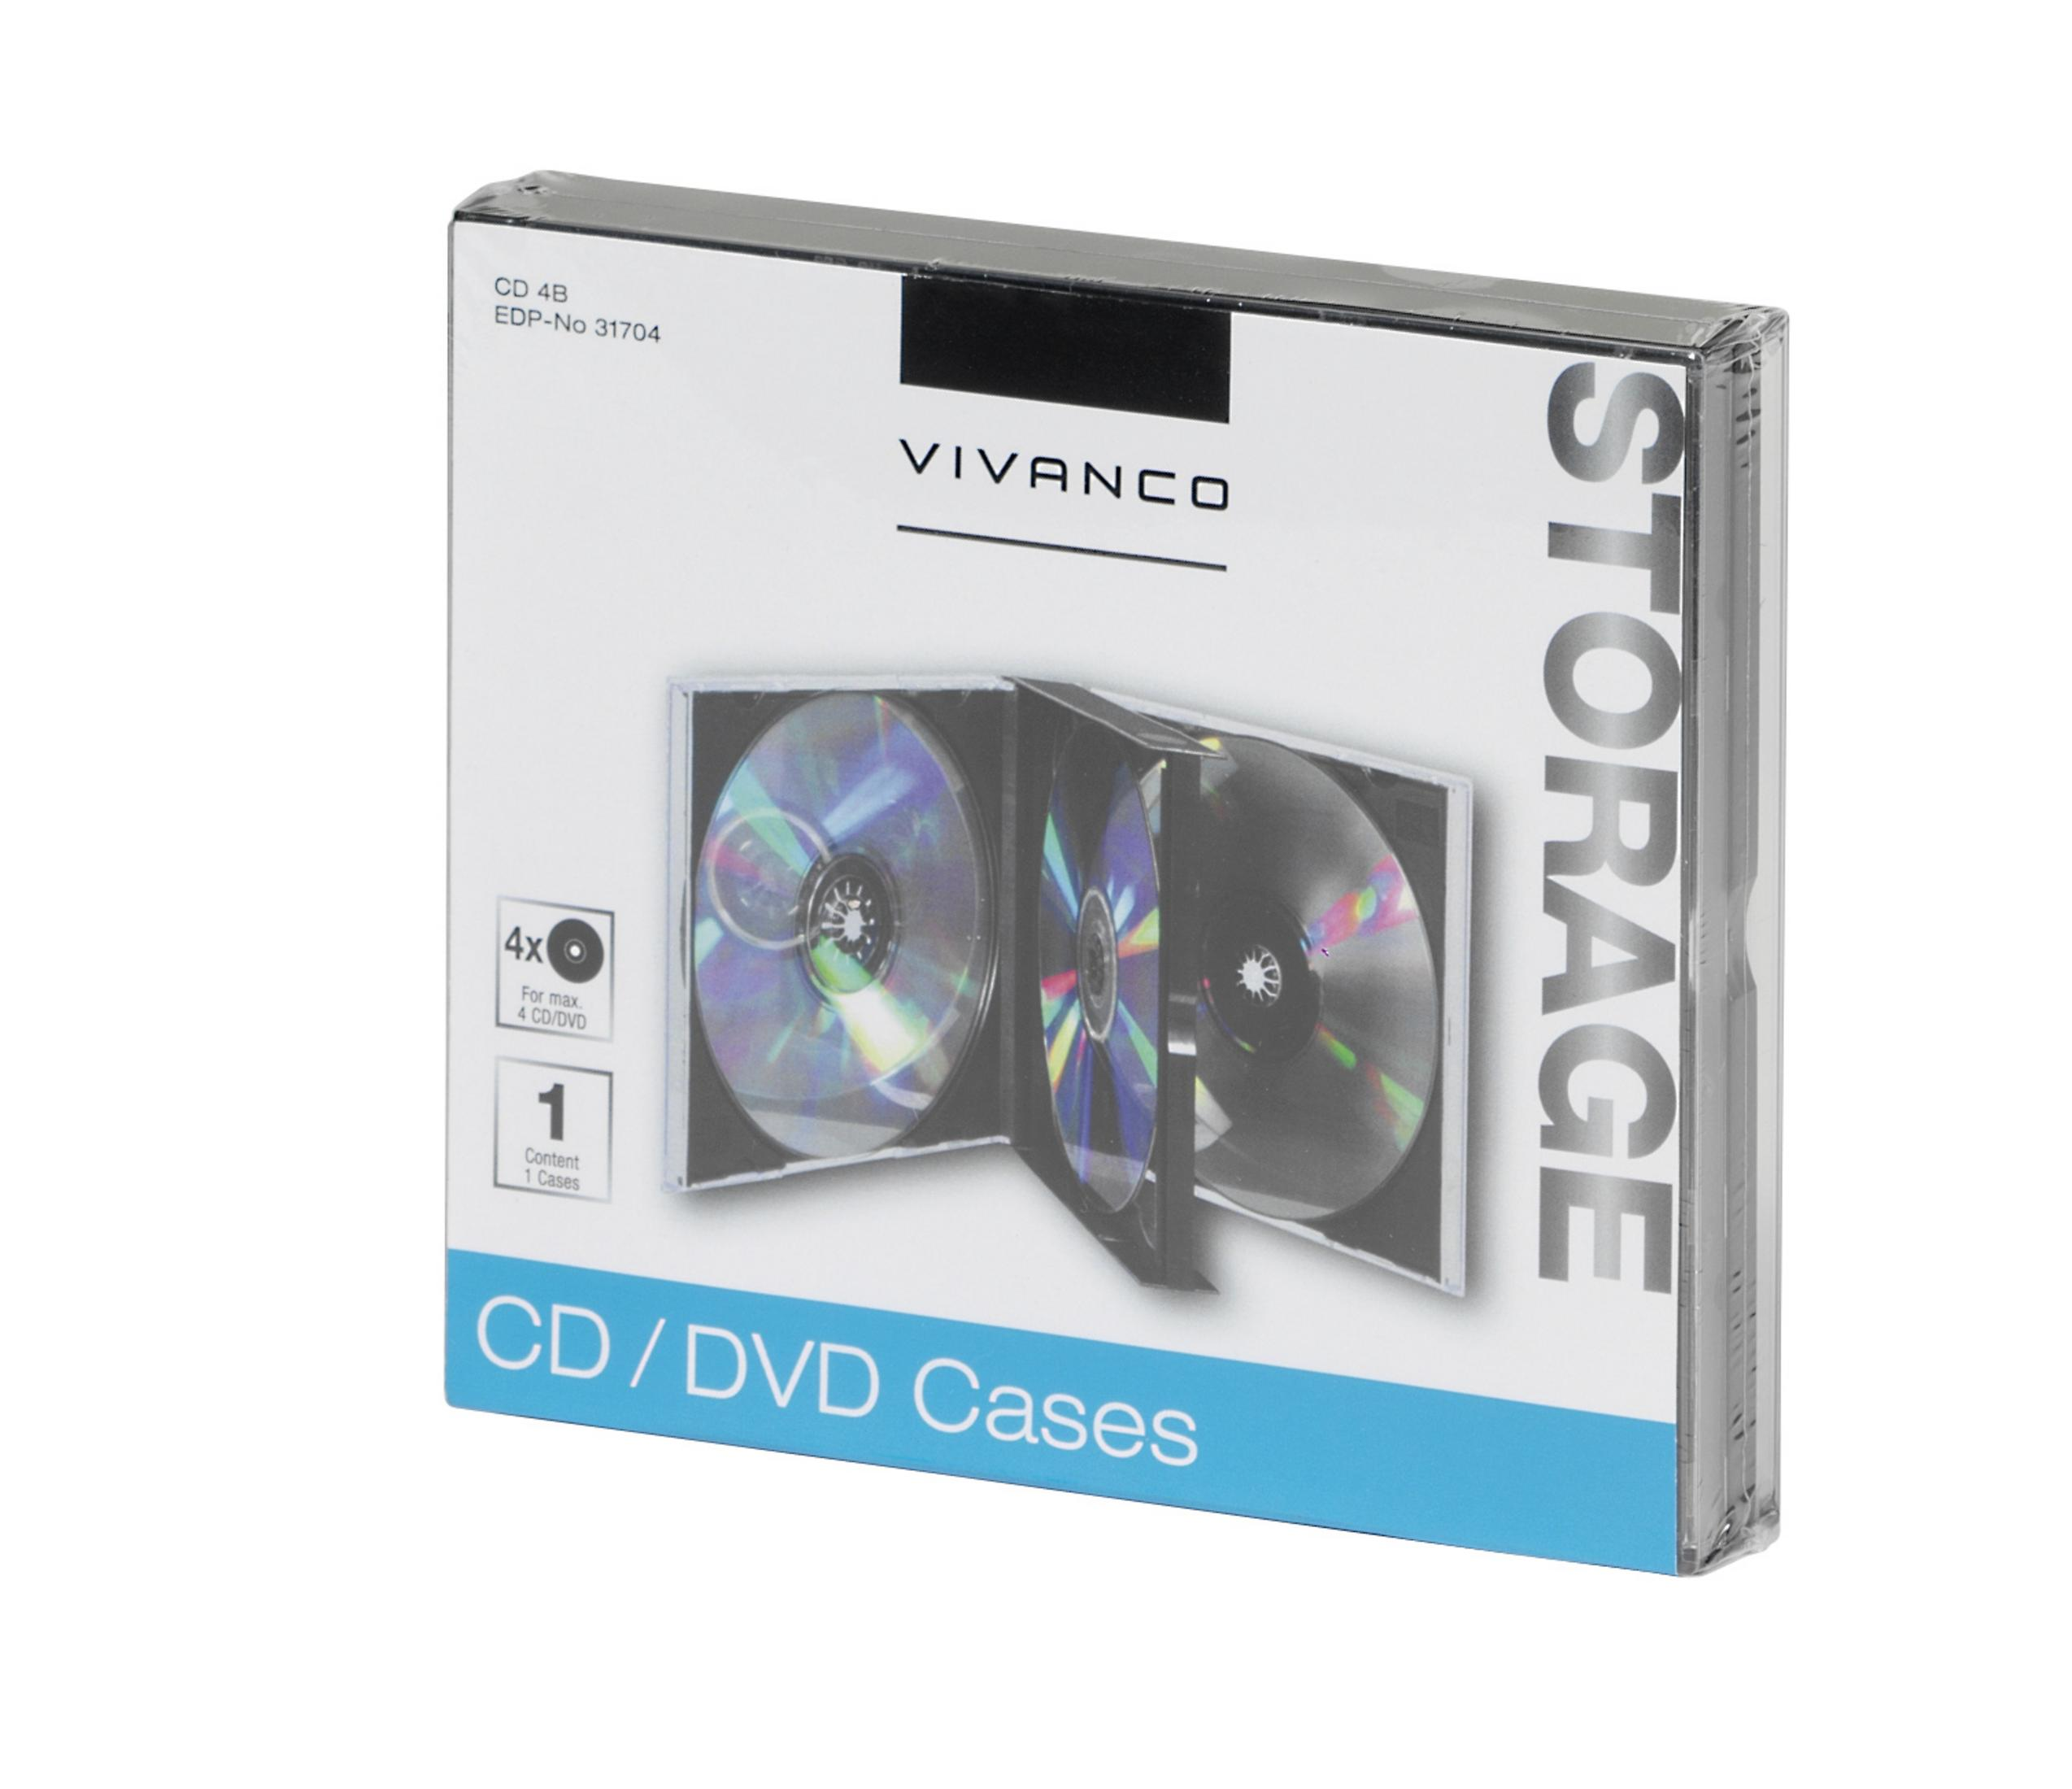 DVDs VIVANCO CD SCHWARZ CDs CASE 31704 Archivierung Schwarz und JEWEL